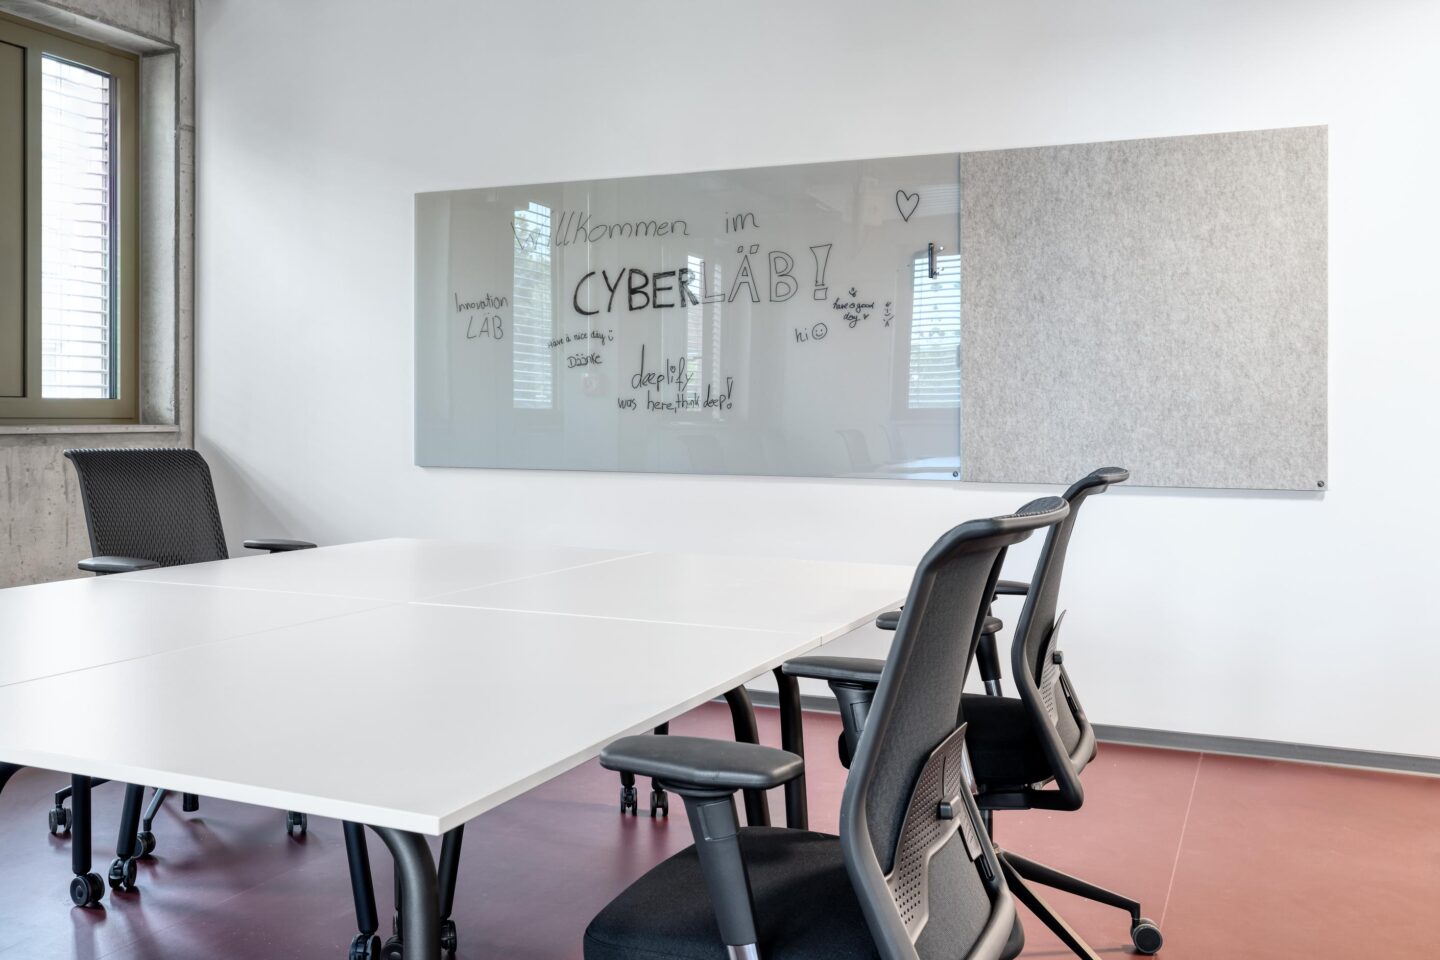 Besprechung │ Meeting │ Kommunikation │ Büroeinrichtung für CyberLab von feco in Karlsruhe